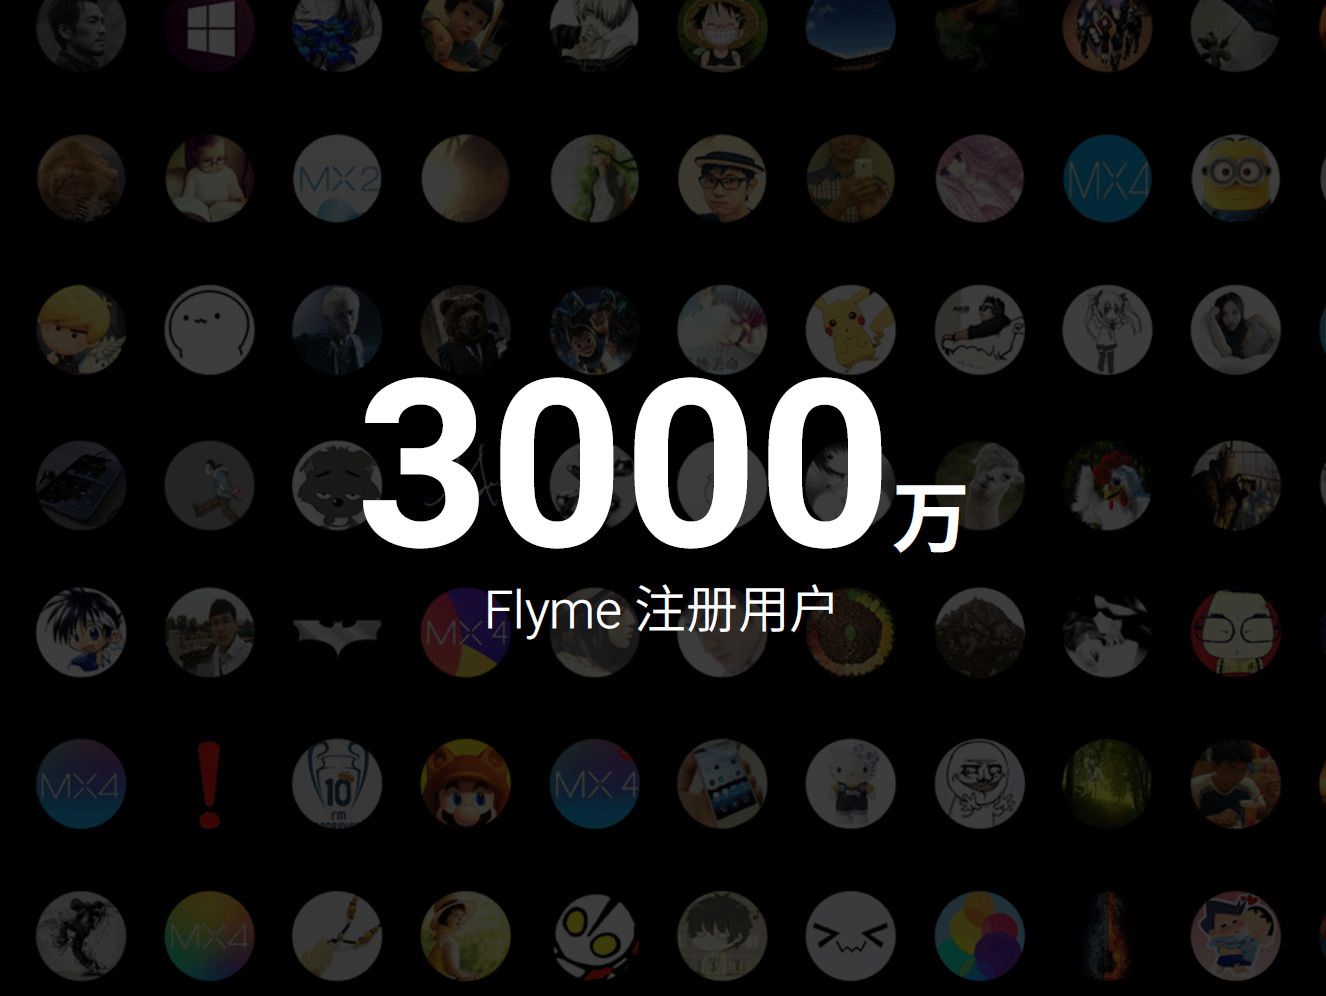 Flymeアカウントの数が3000万を超えたと発表。すごい事だけれども・・・？